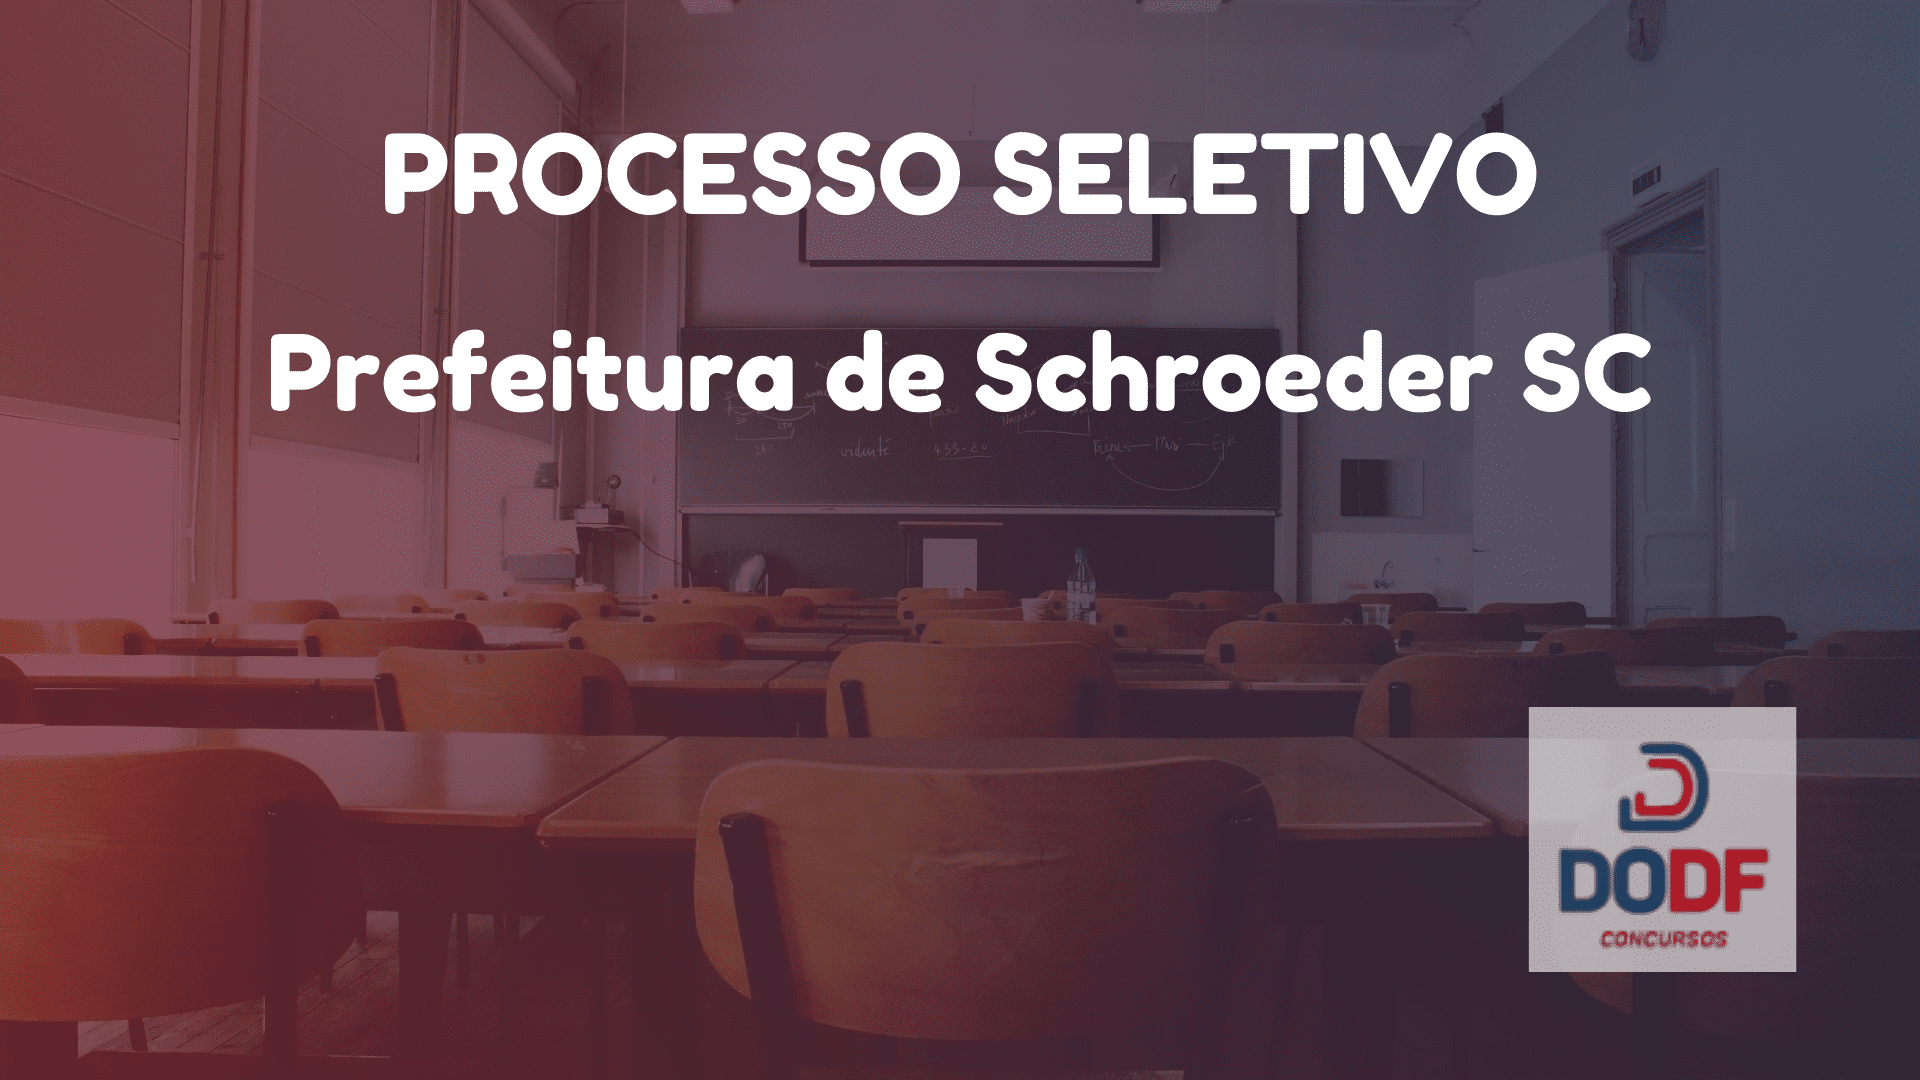 Processo Seletivo Prefeitura de Schroeder SC: Edital 2019 e Inscrições